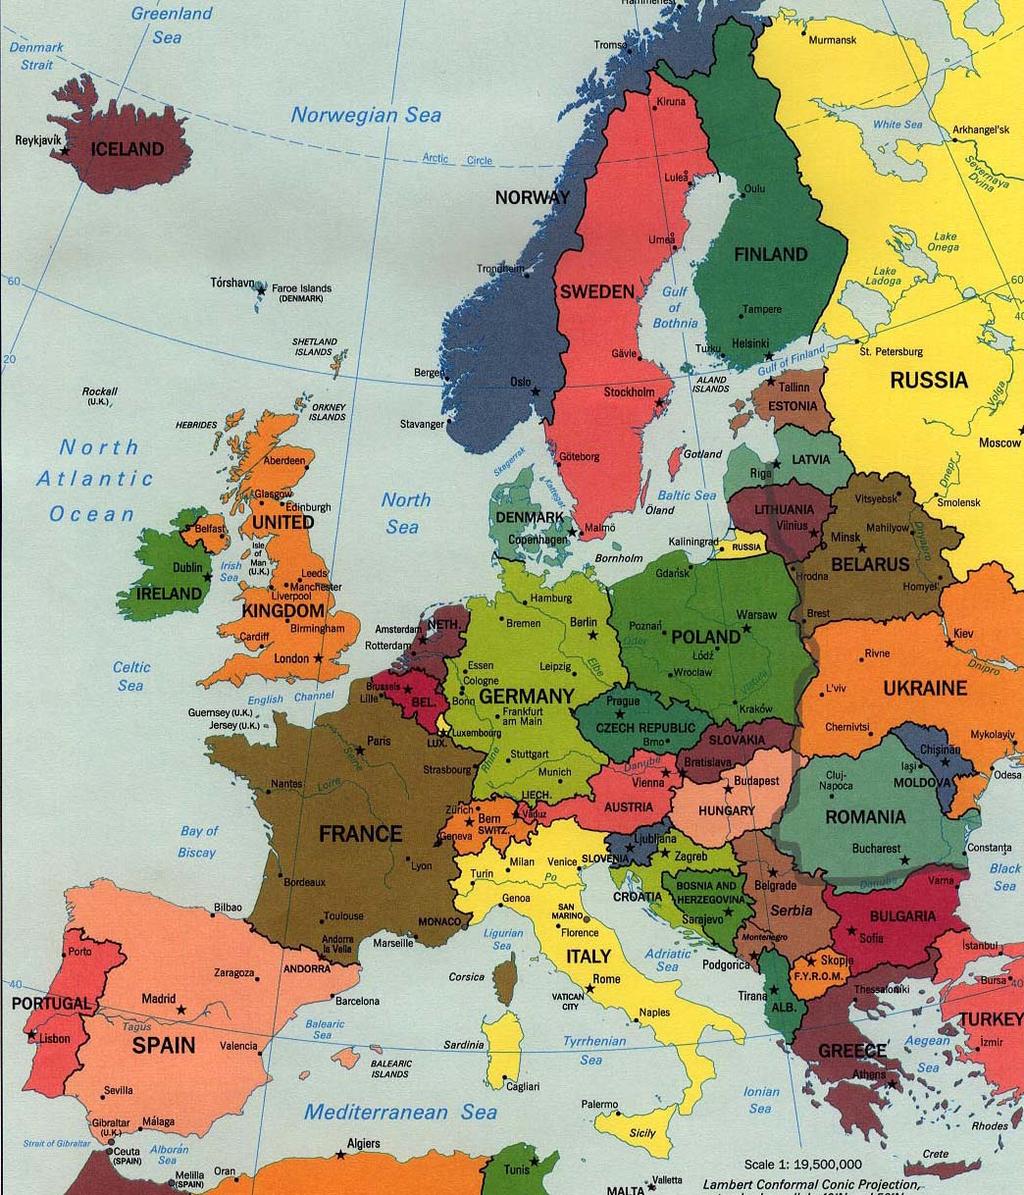 13 countries + the EU Norway Sweden Finland Denmark Netherlands Belgium